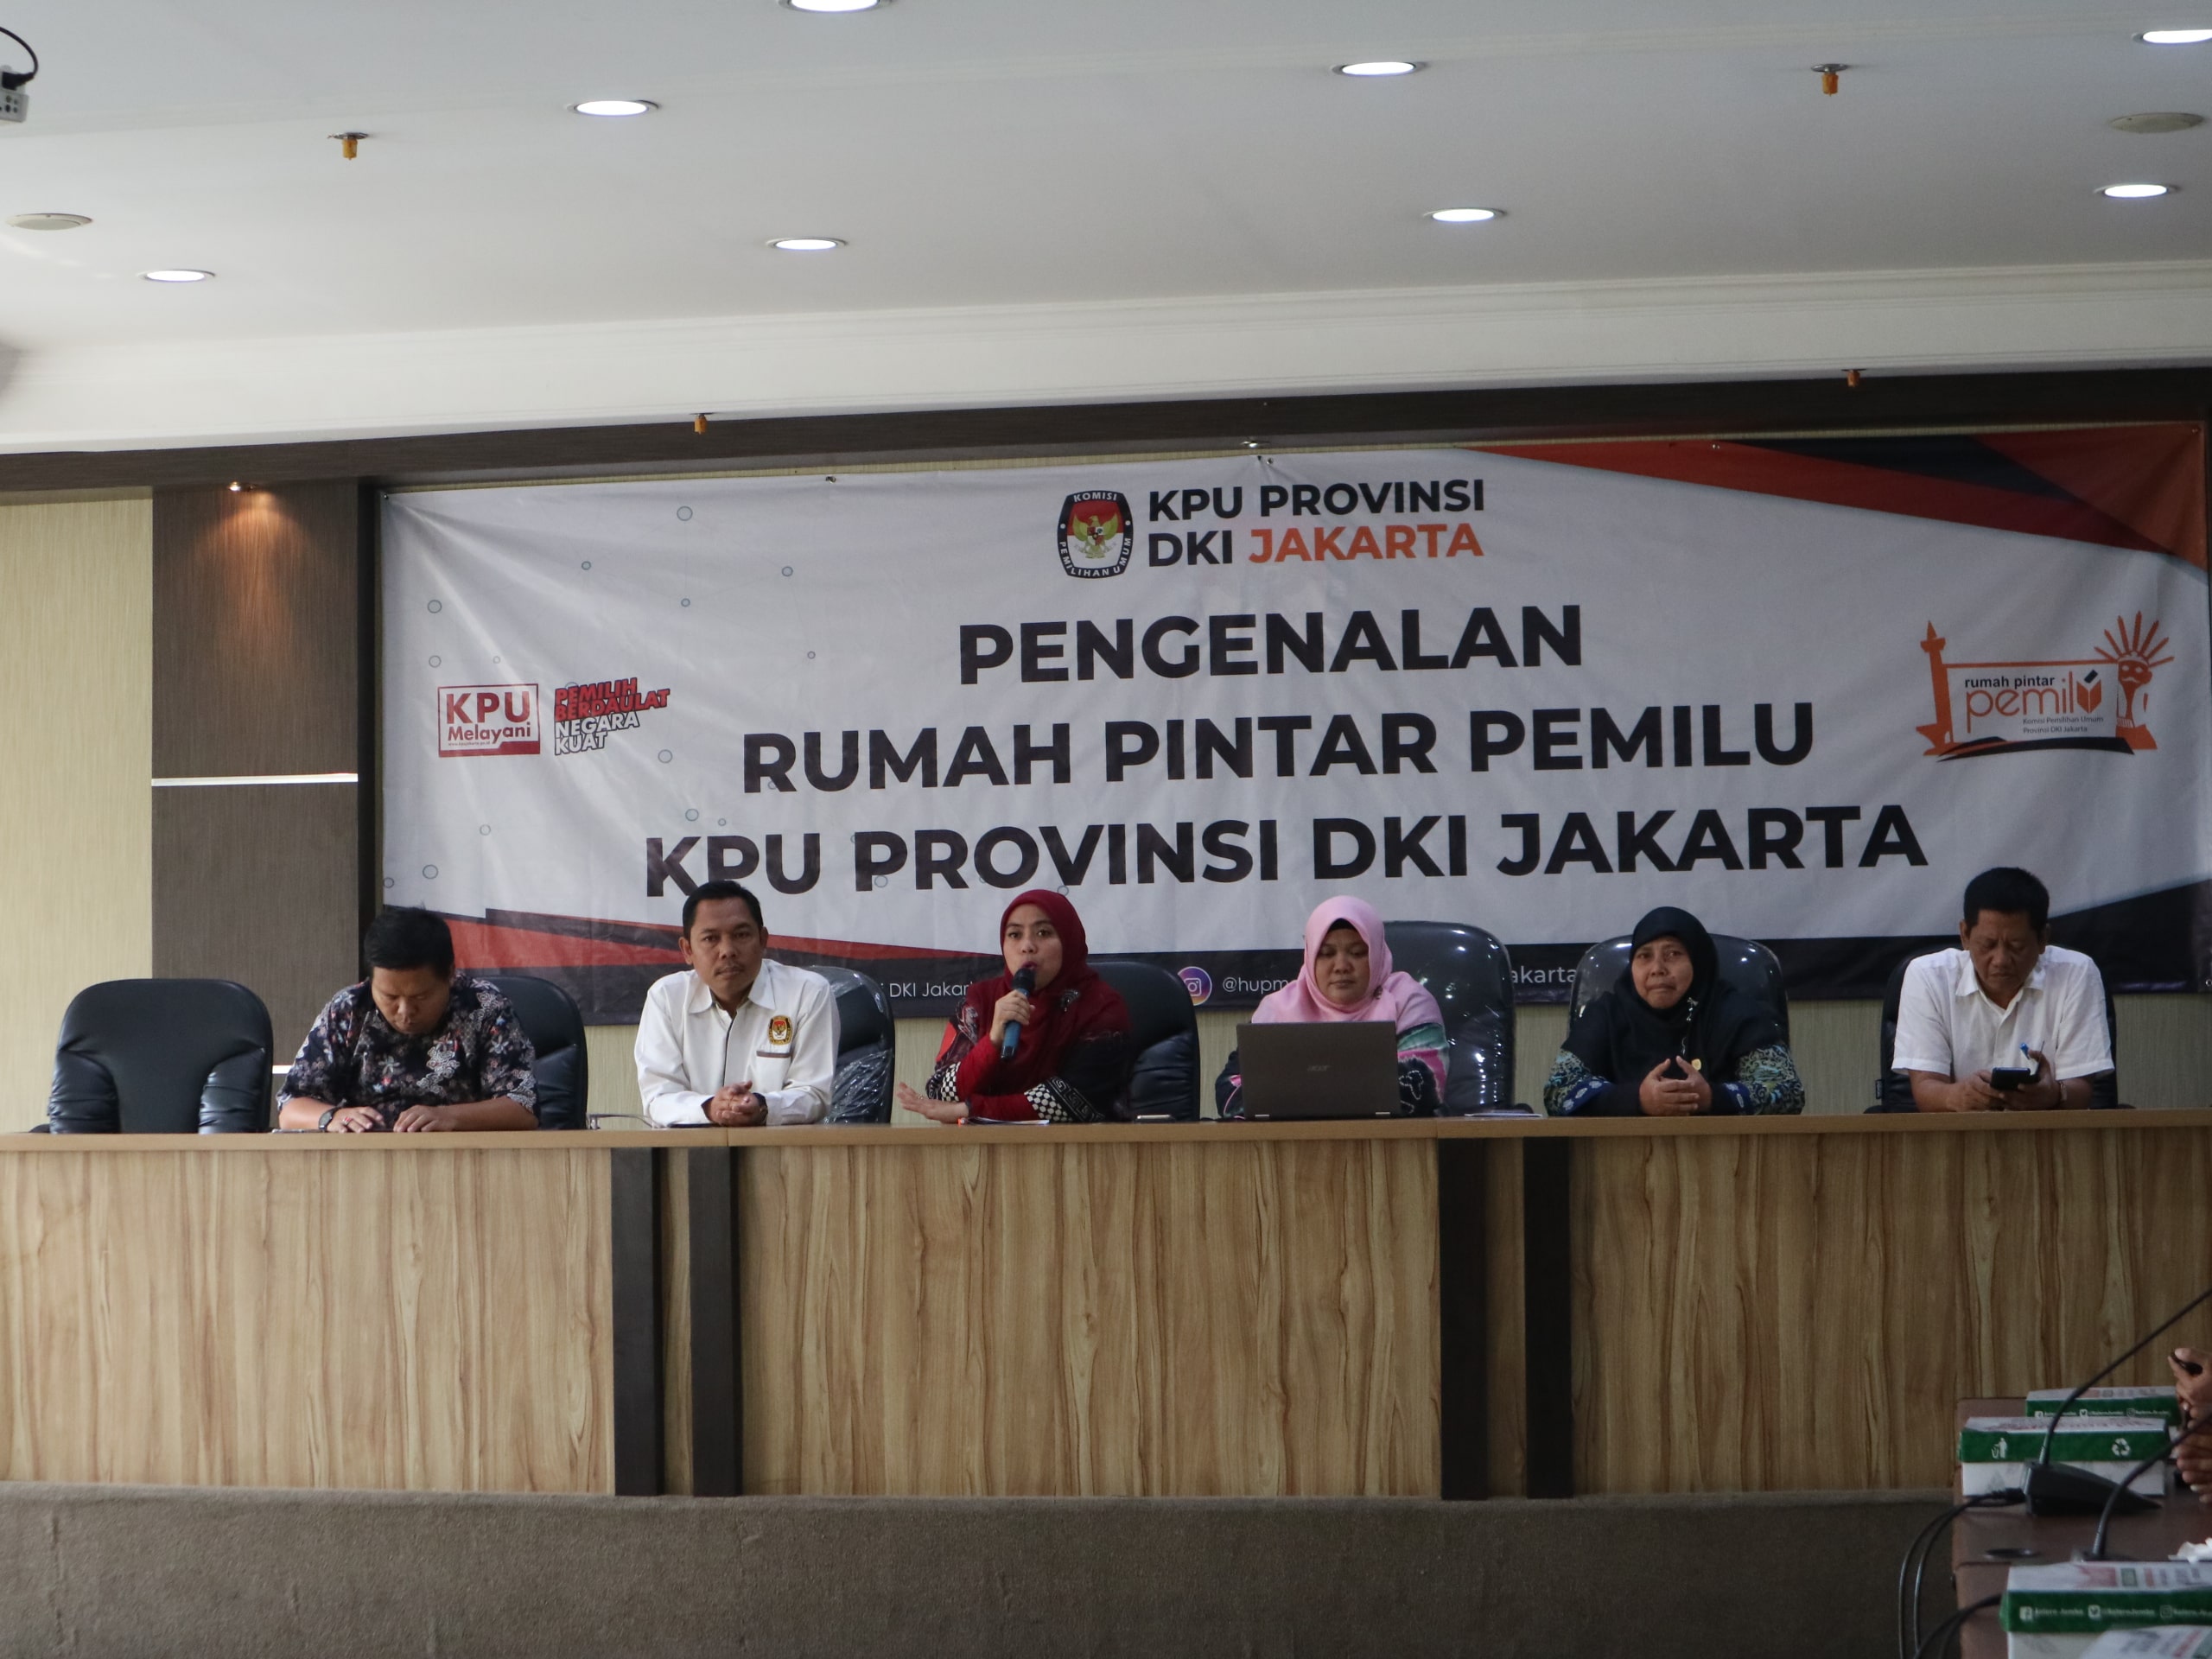 PENGENALAN RUMAH PINTAR PEMILU KPU PROV DKI JAKARTA 11 Desember 2019